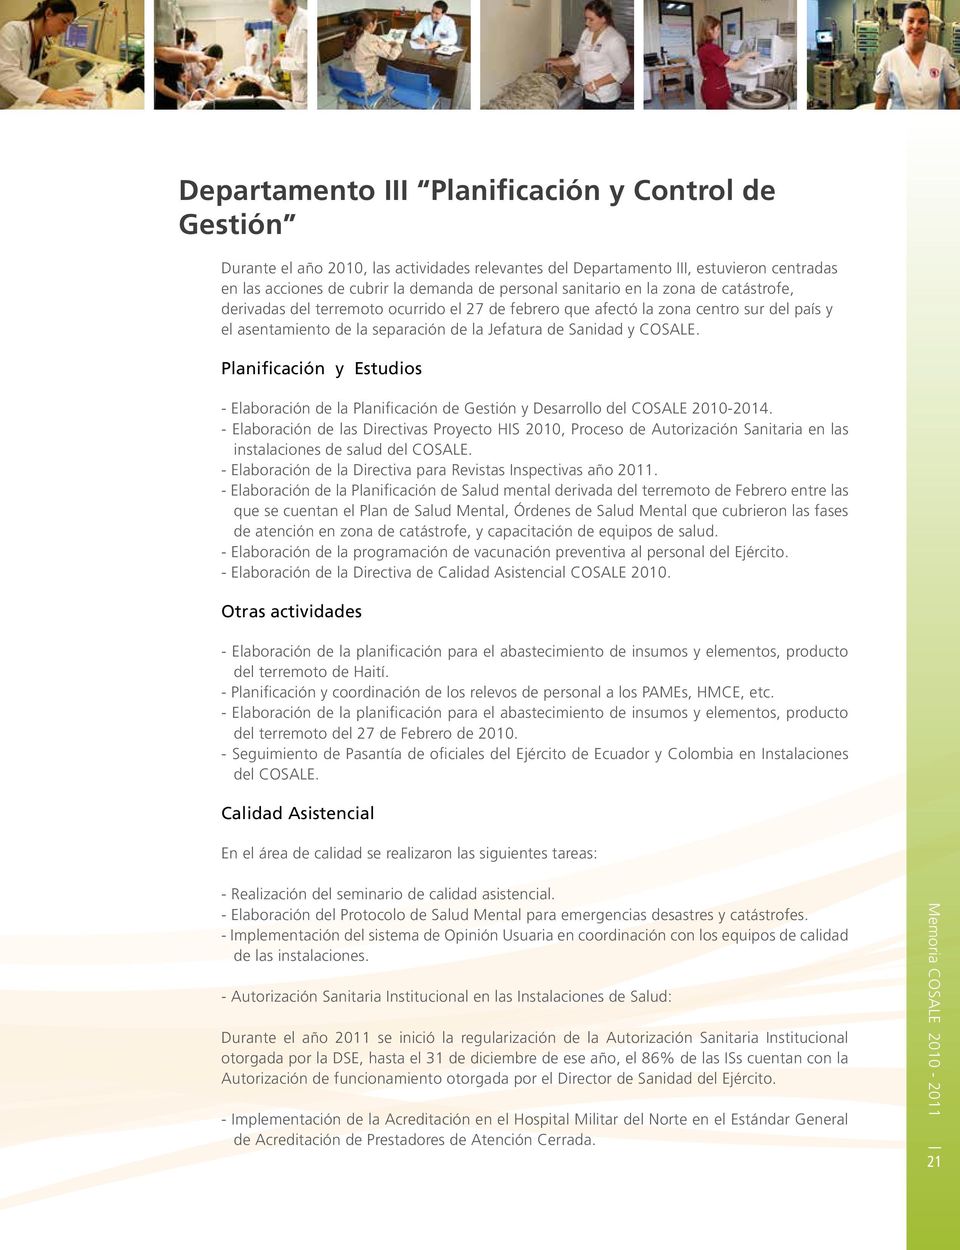 Planificación y Estudios - Elaboración de la Planificación de Gestión y Desarrollo del COSALE 2010-2014.